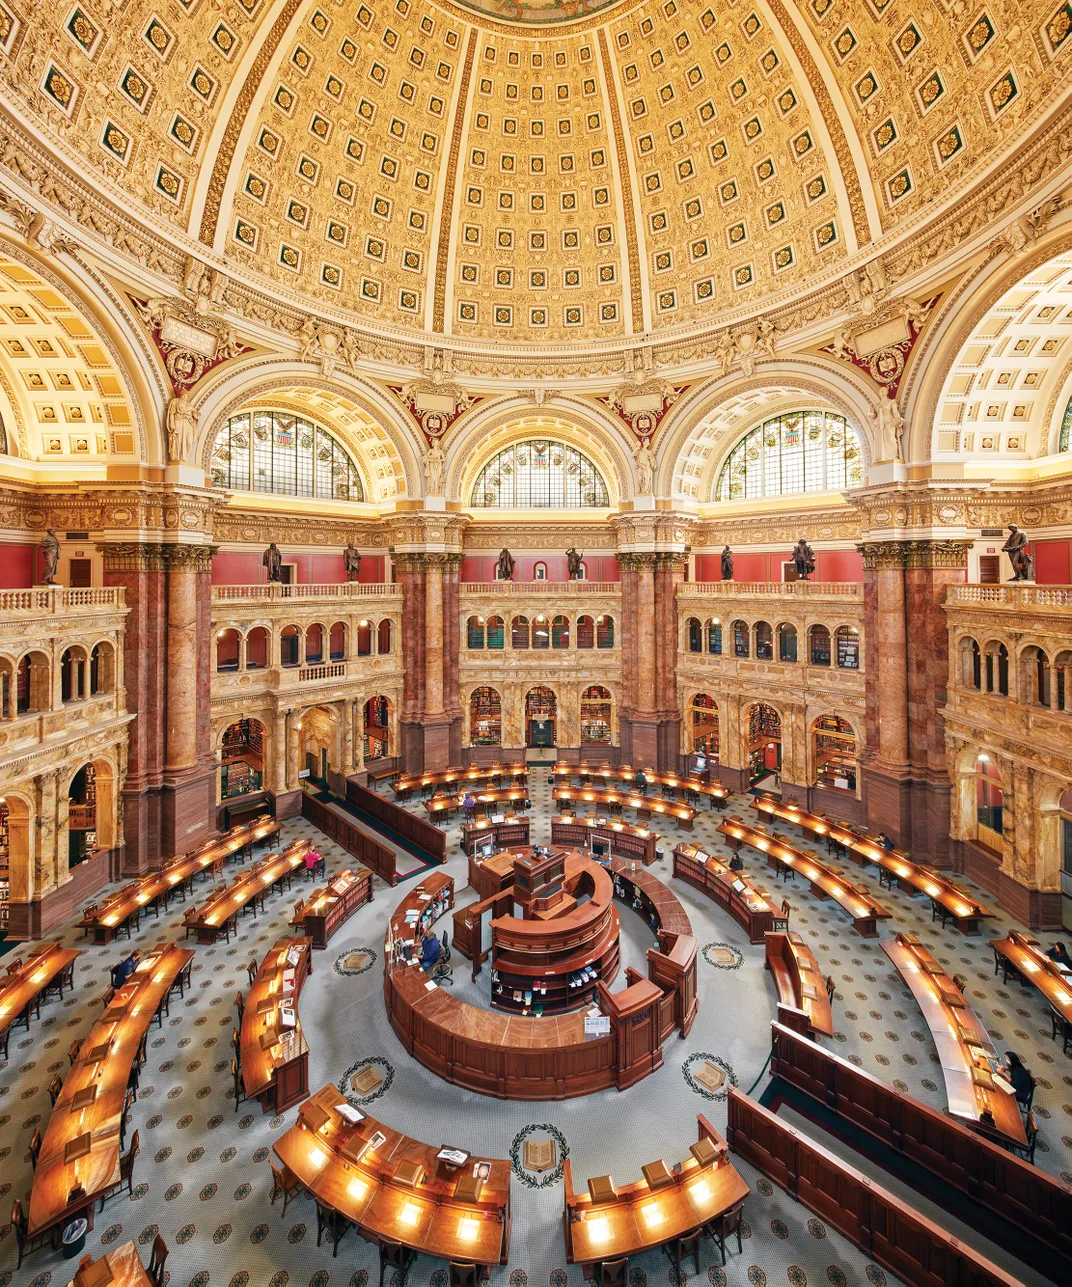 Library of Congress rotunda